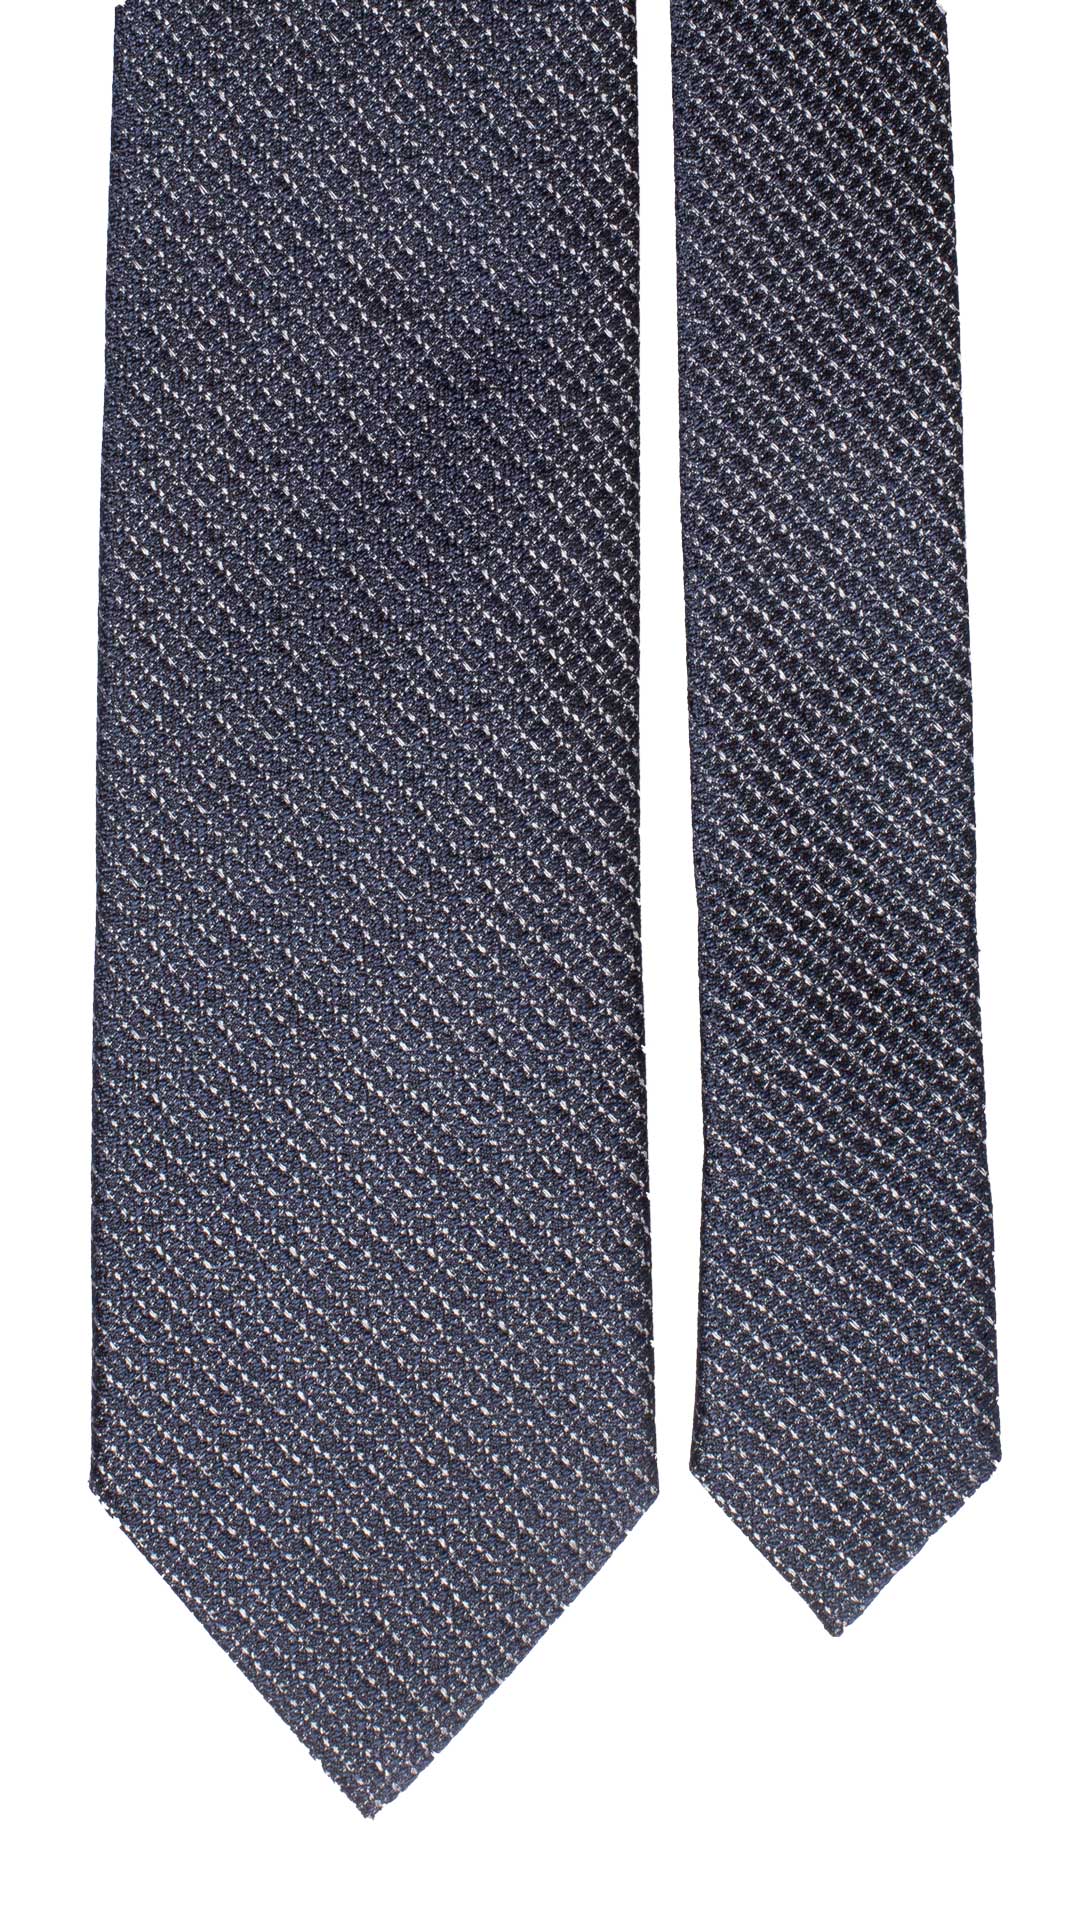 Cravatta da Cerimonia di Seta Blu Grigia Effetto Lino Made in Italy Graffeo Cravatte Dettaglio